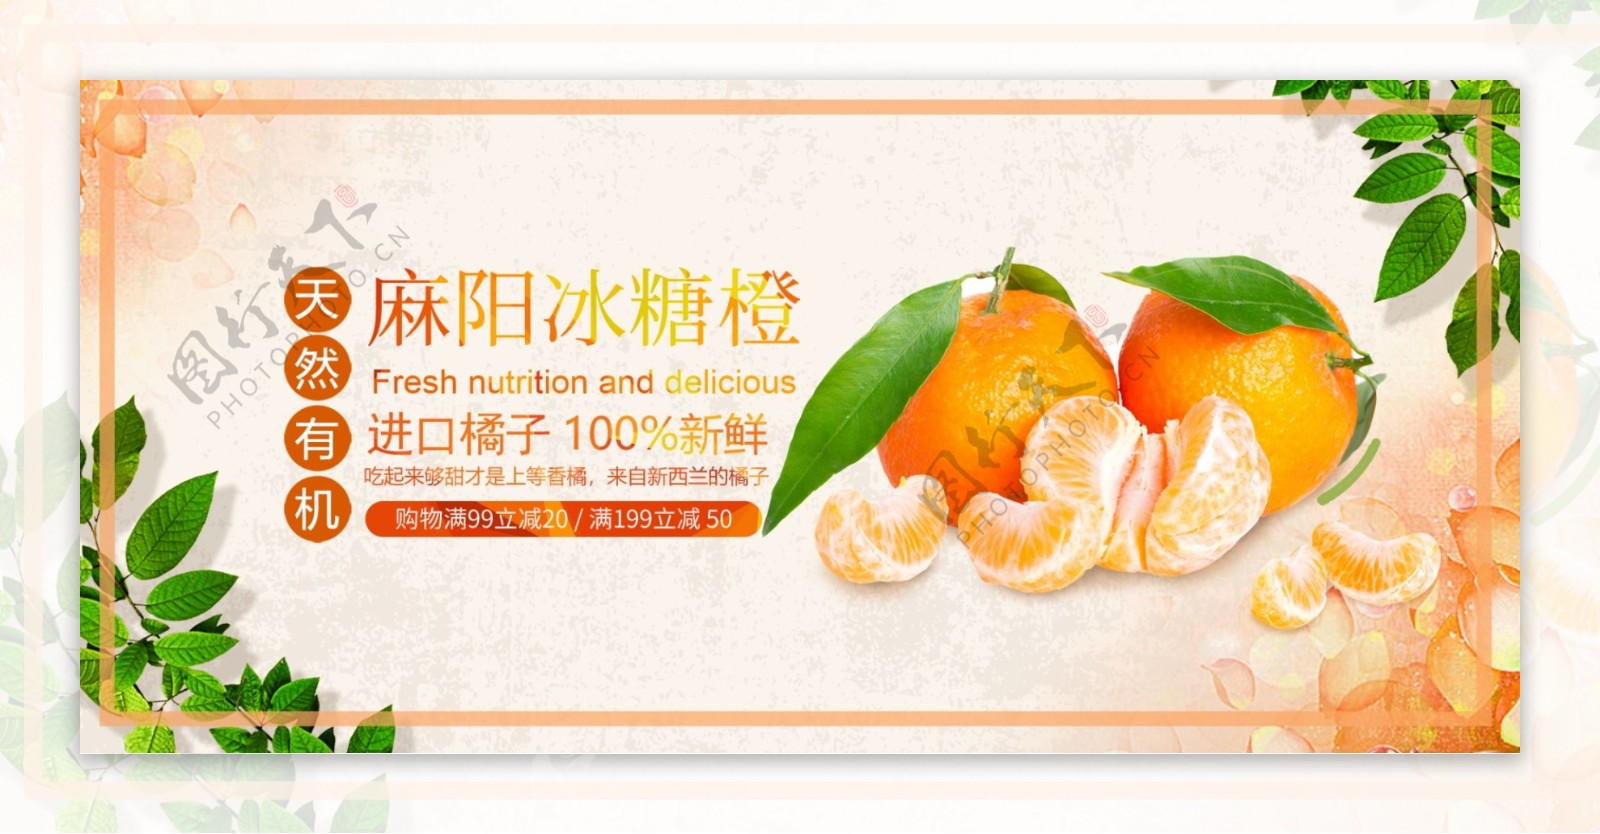 生鲜橙子冰糖橙水果促销电商淘宝主图首焦